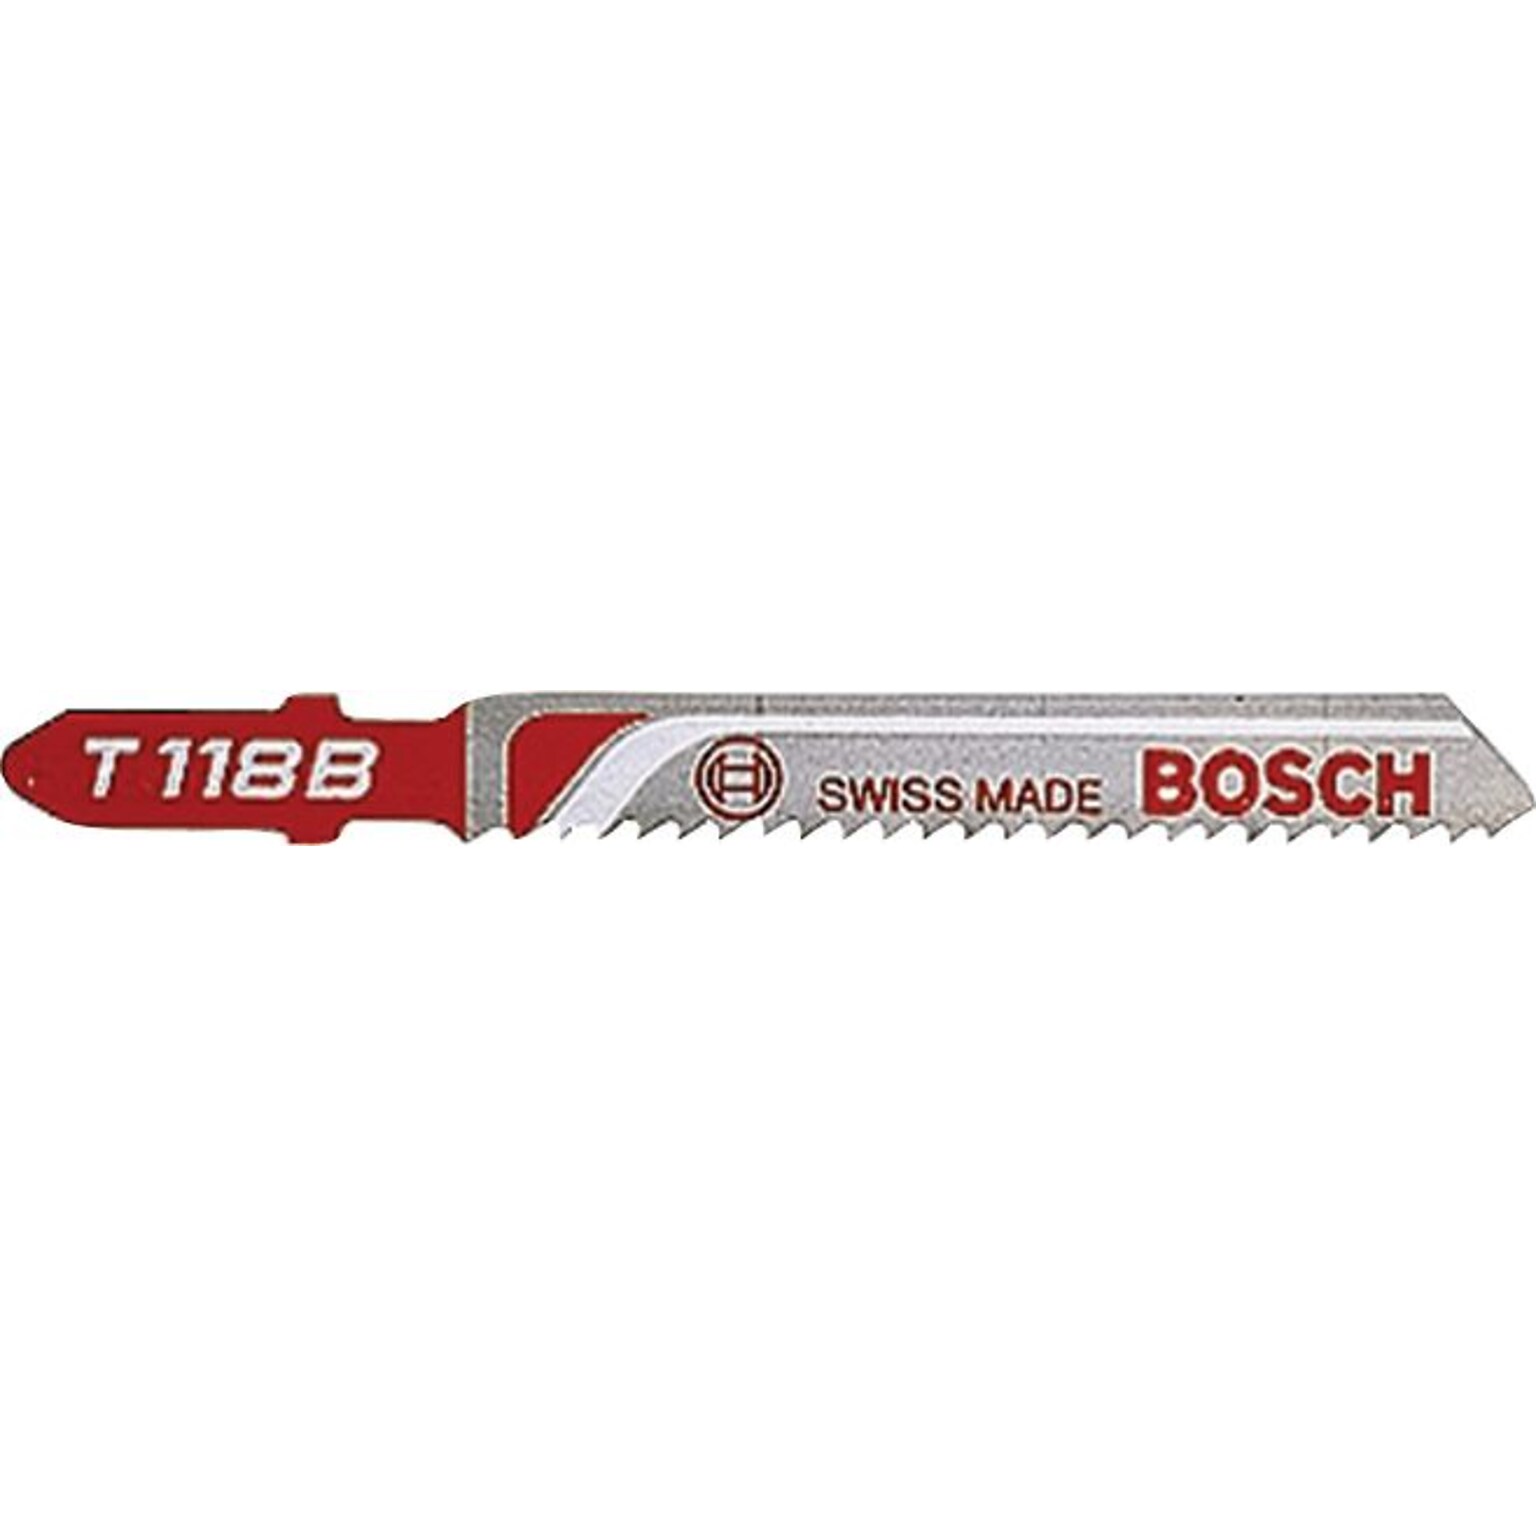 Bosch HSS Jigsaw Blades, 3